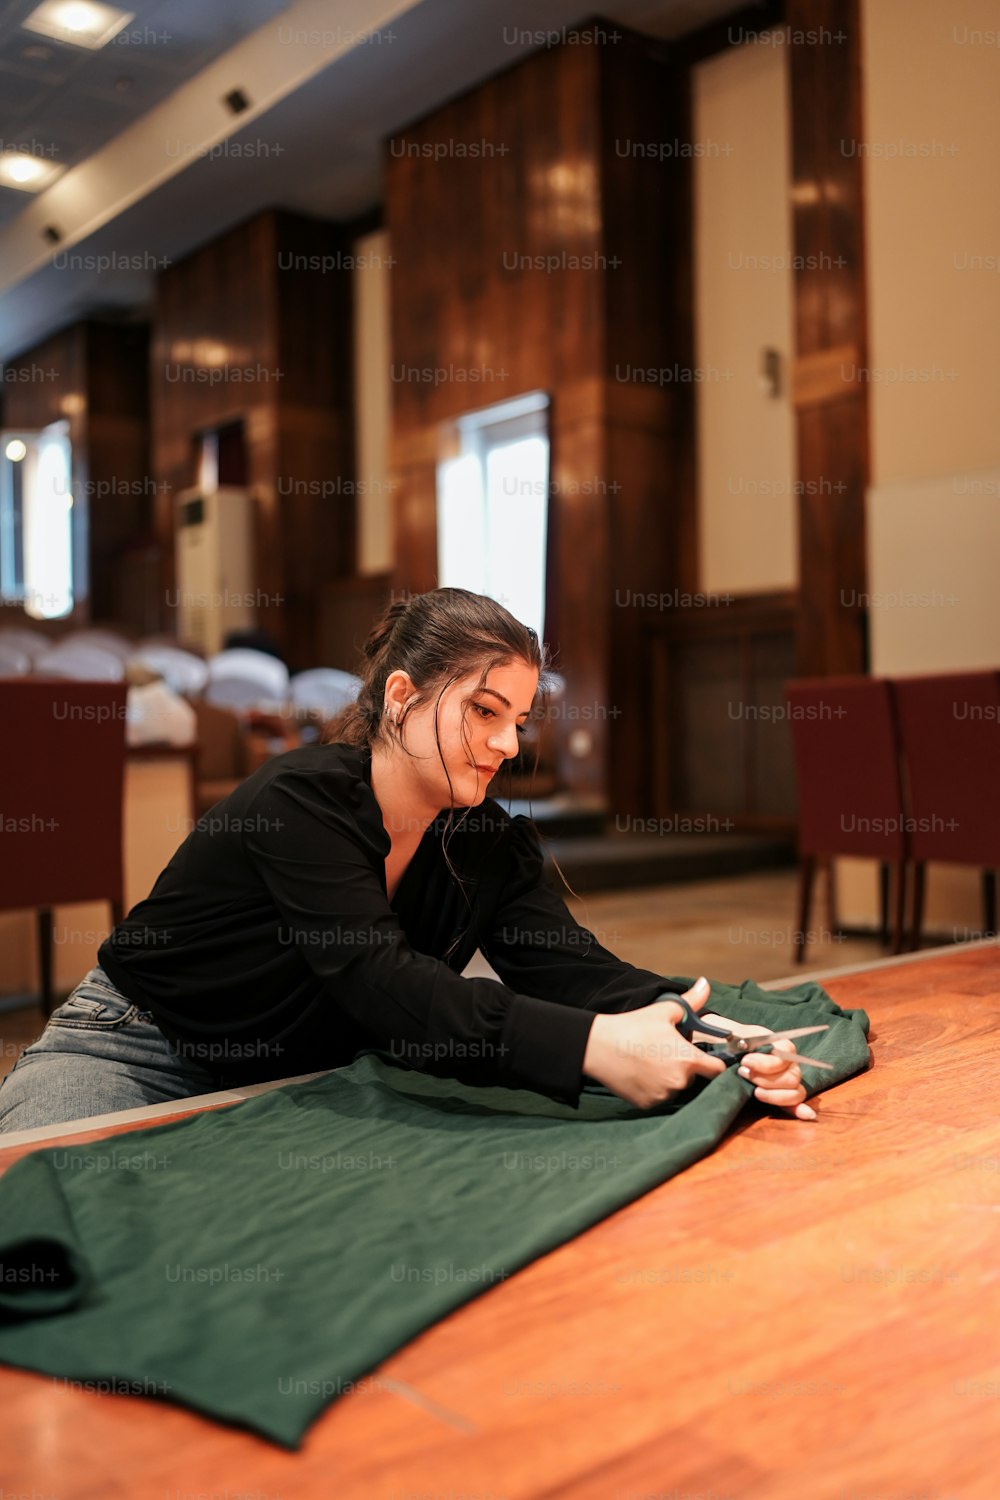 Una mujer sentada en el suelo usando un teléfono celular